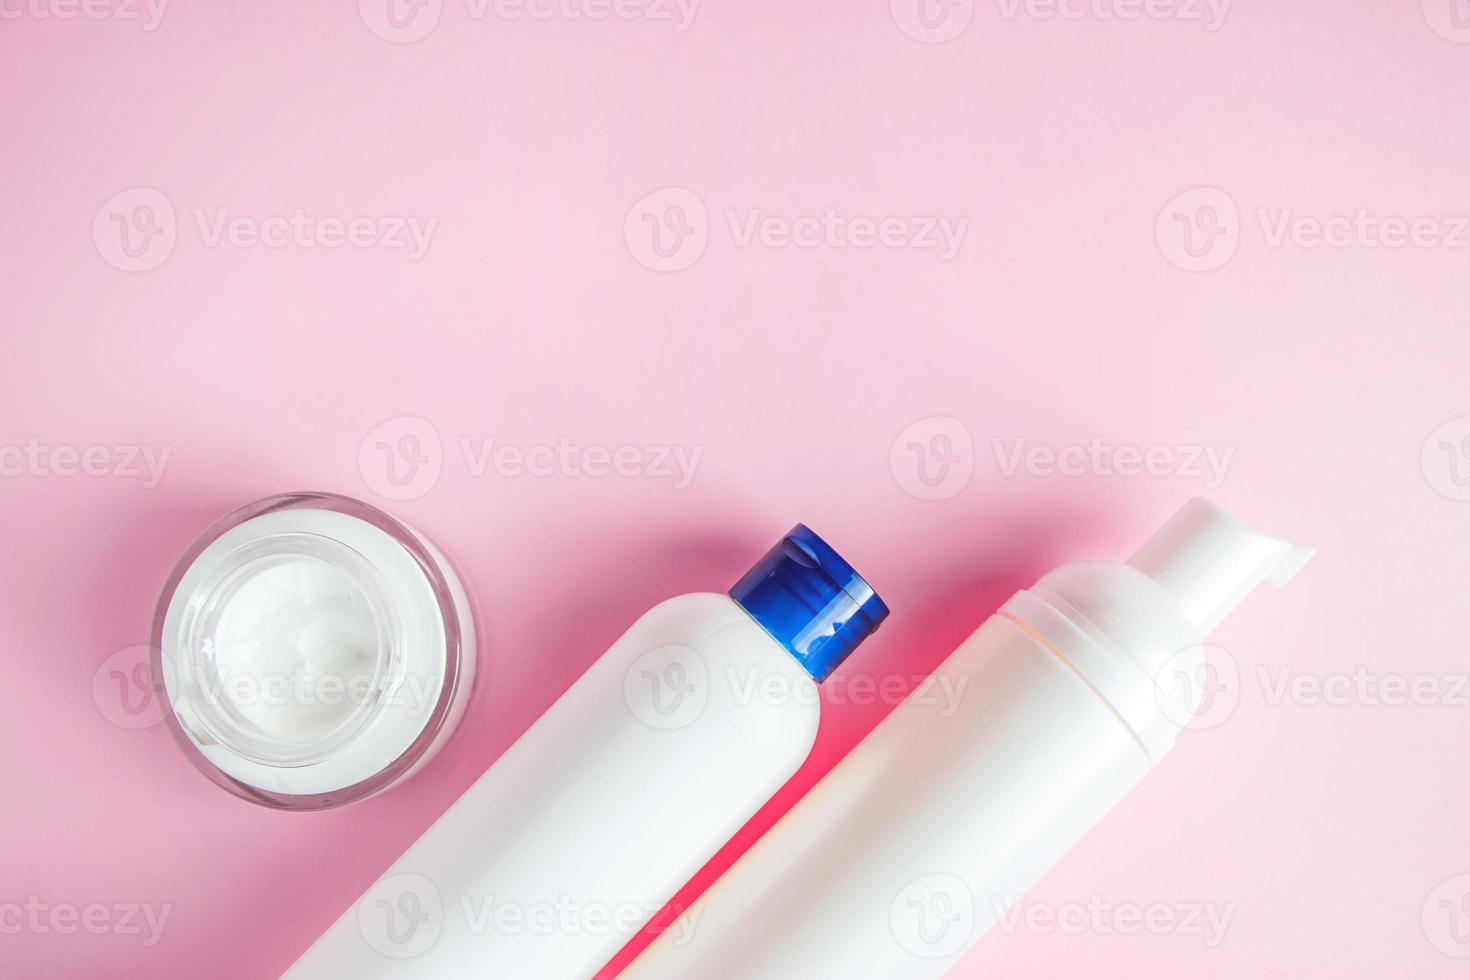 ensemble de cosmétiques pour les soins de la peau et le nettoyage sur fond rose. le concept de pureté et de santé corporelle. place pour le texte. photo